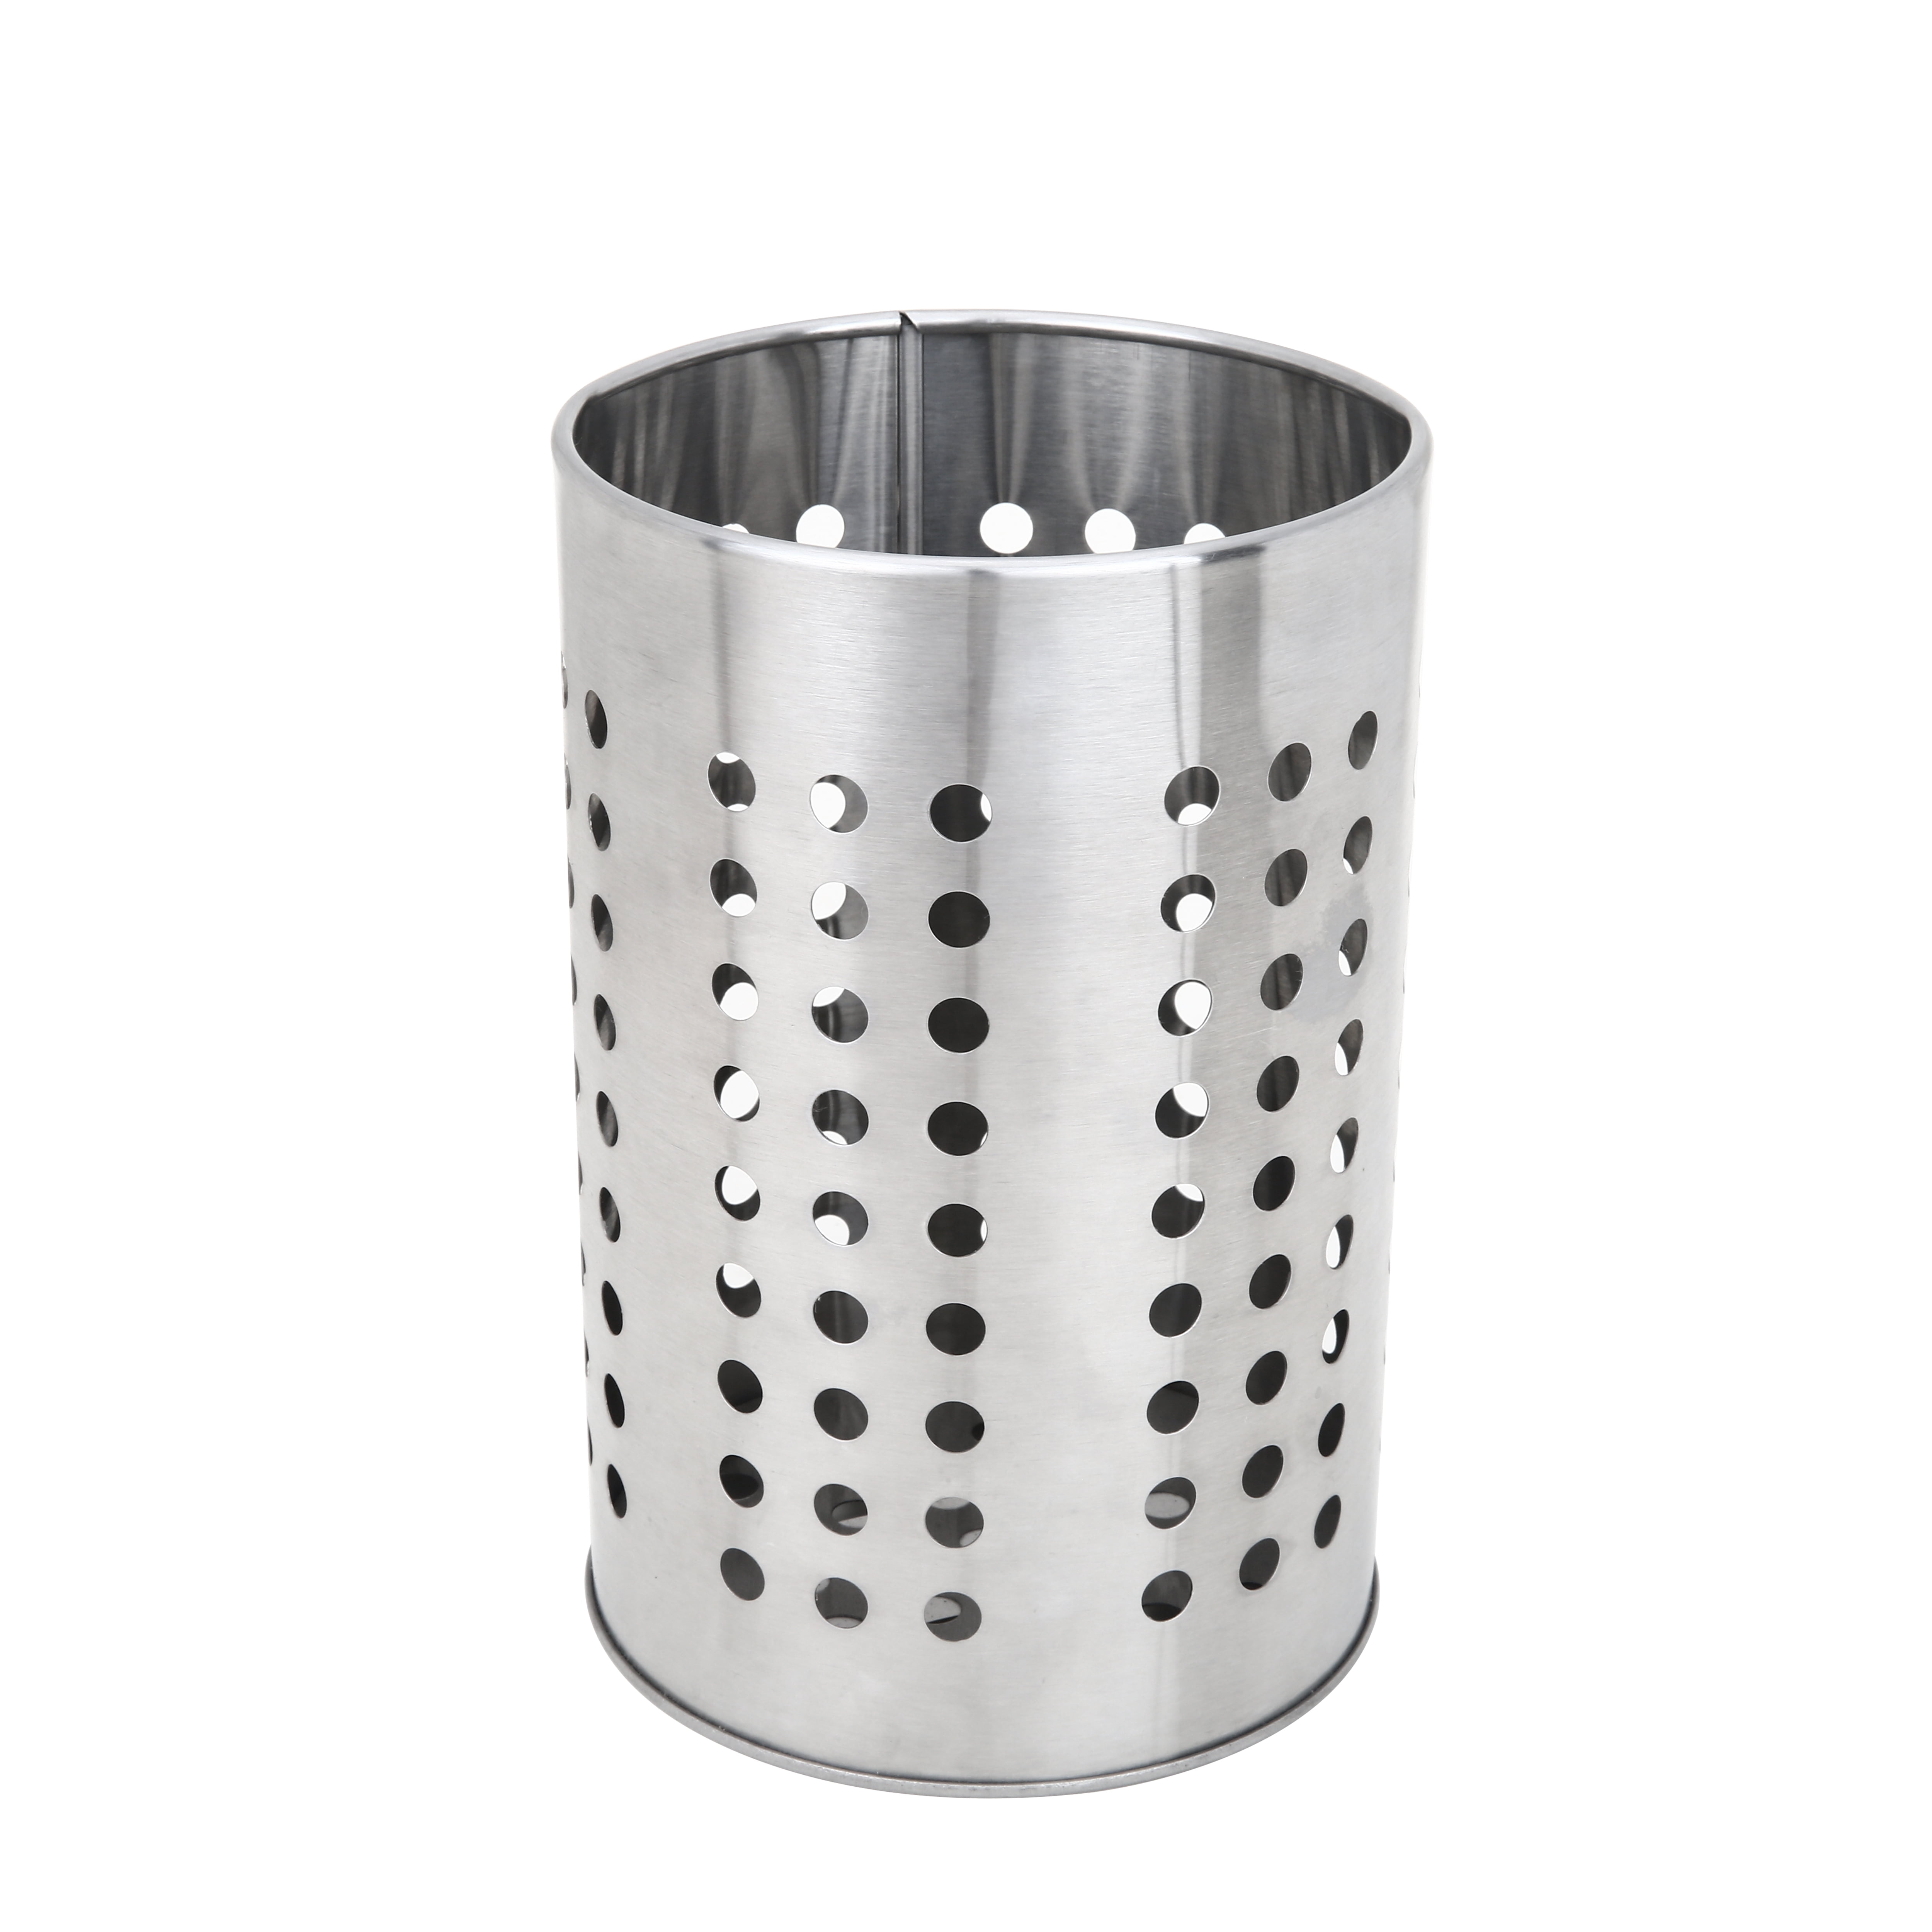 ORDNING Utensil holder, stainless steel, Height: 7 1/8 Diameter: 4 3/4 -  IKEA